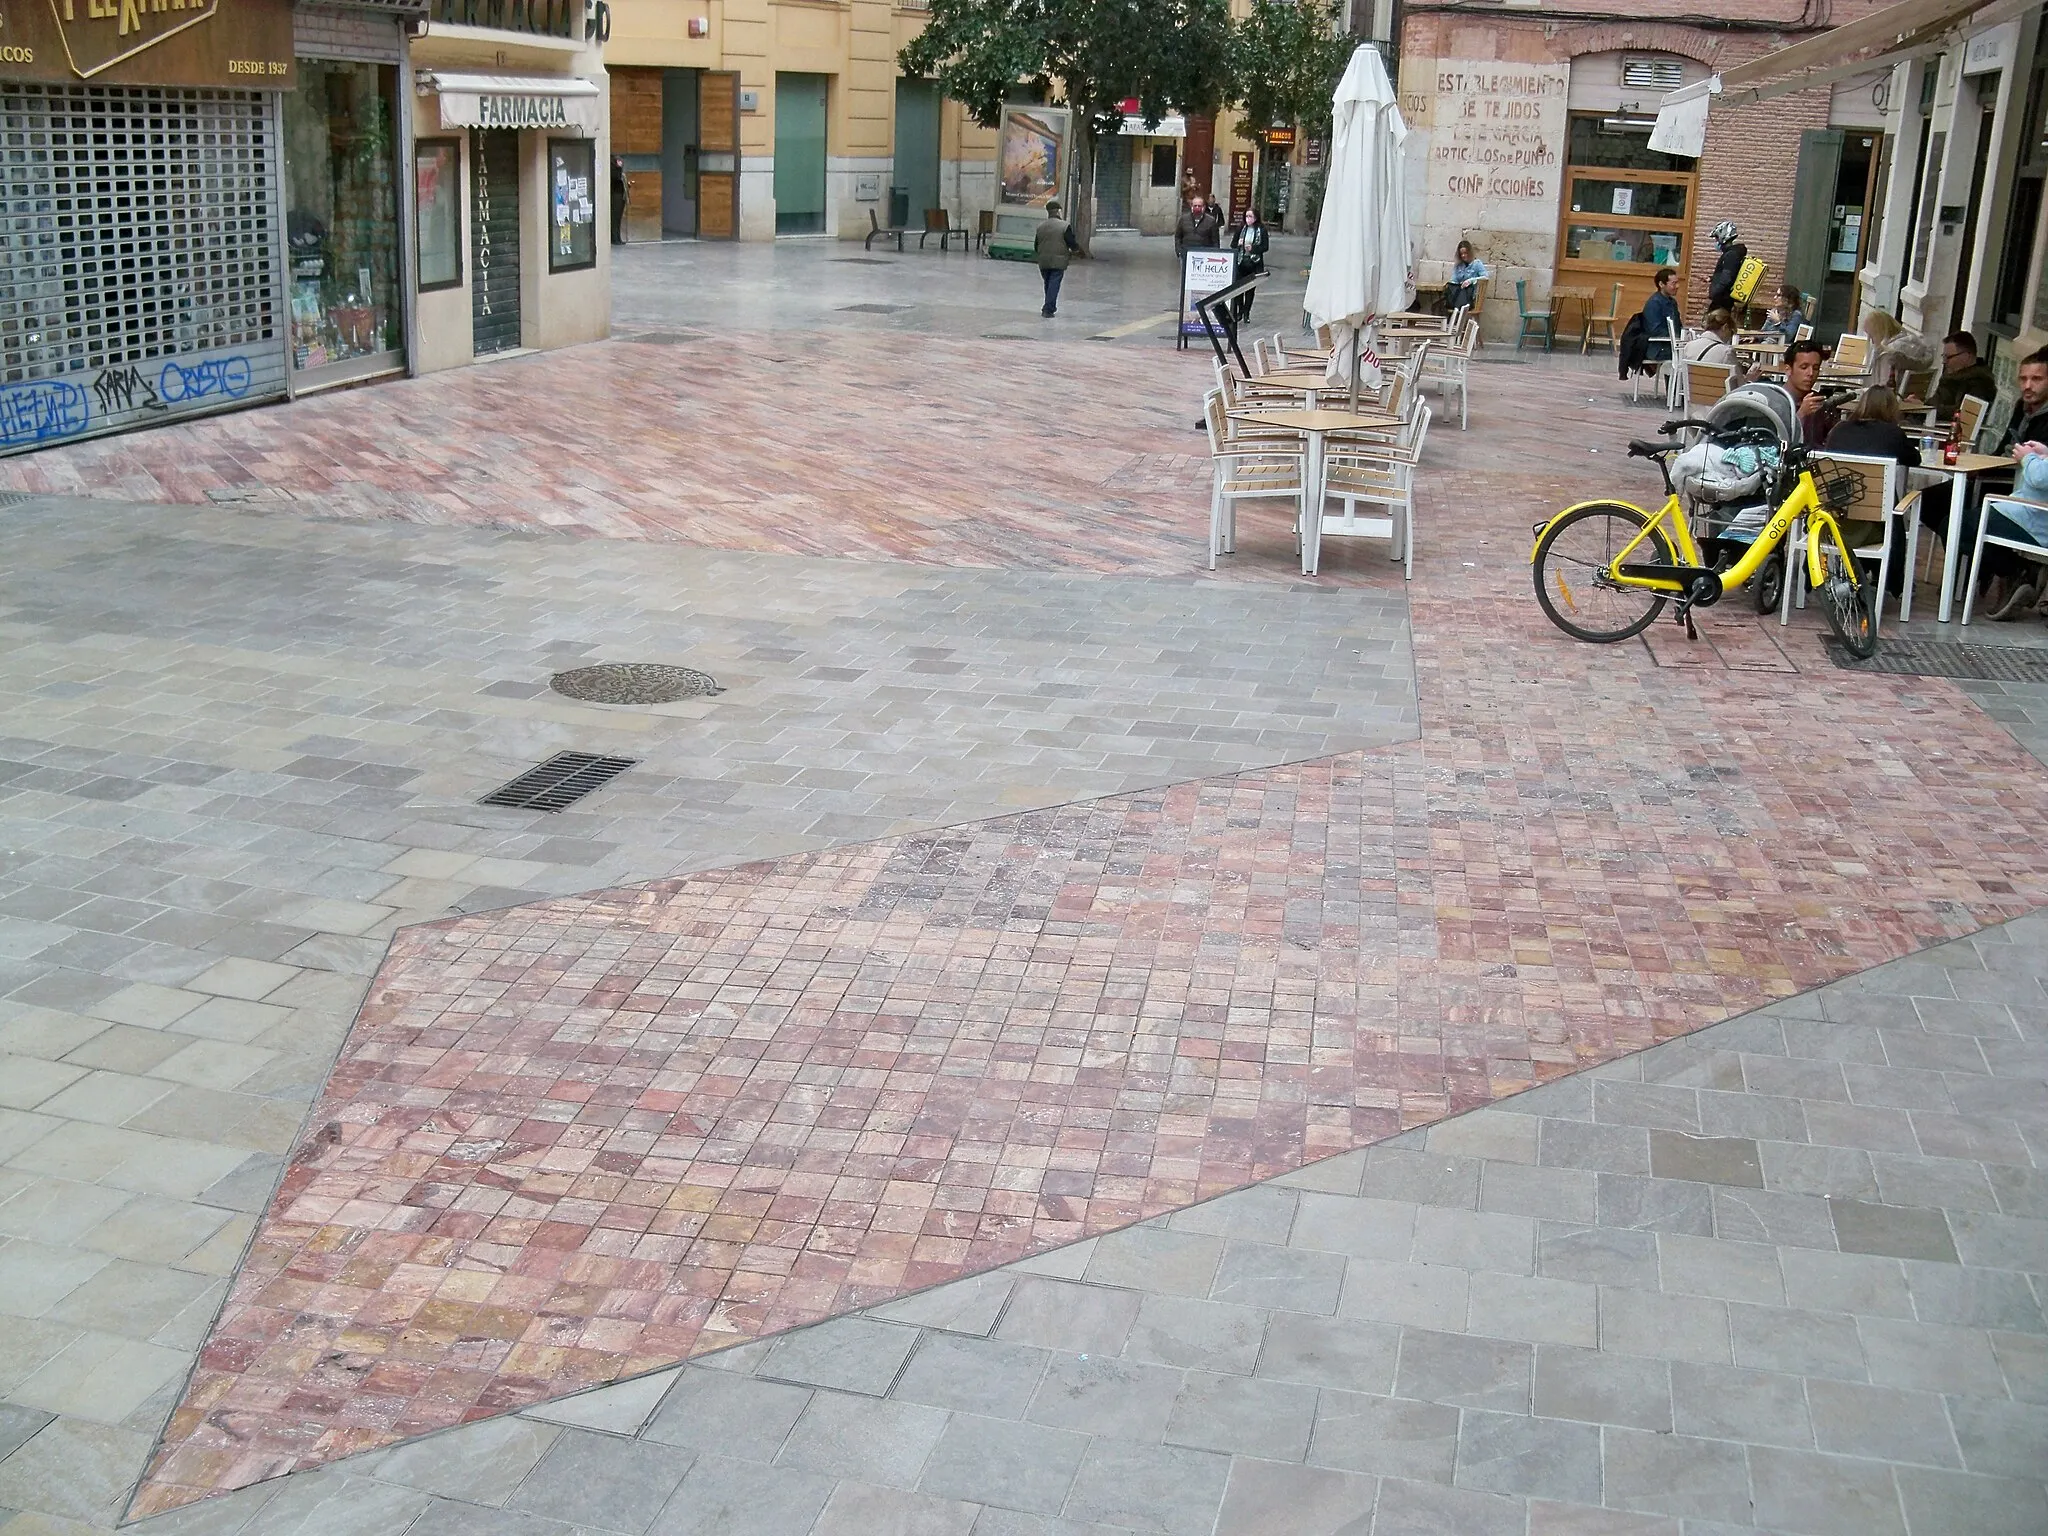 Photo showing: Vista de la calle Puerta Nueva, en Málaga, España, donde se aprecia el recorrido de la muralla medieval de Málaga marcado sobre el pavimento de la calle con mármol travertino rojo sobre la proyección en planta de la traza de la muralla.